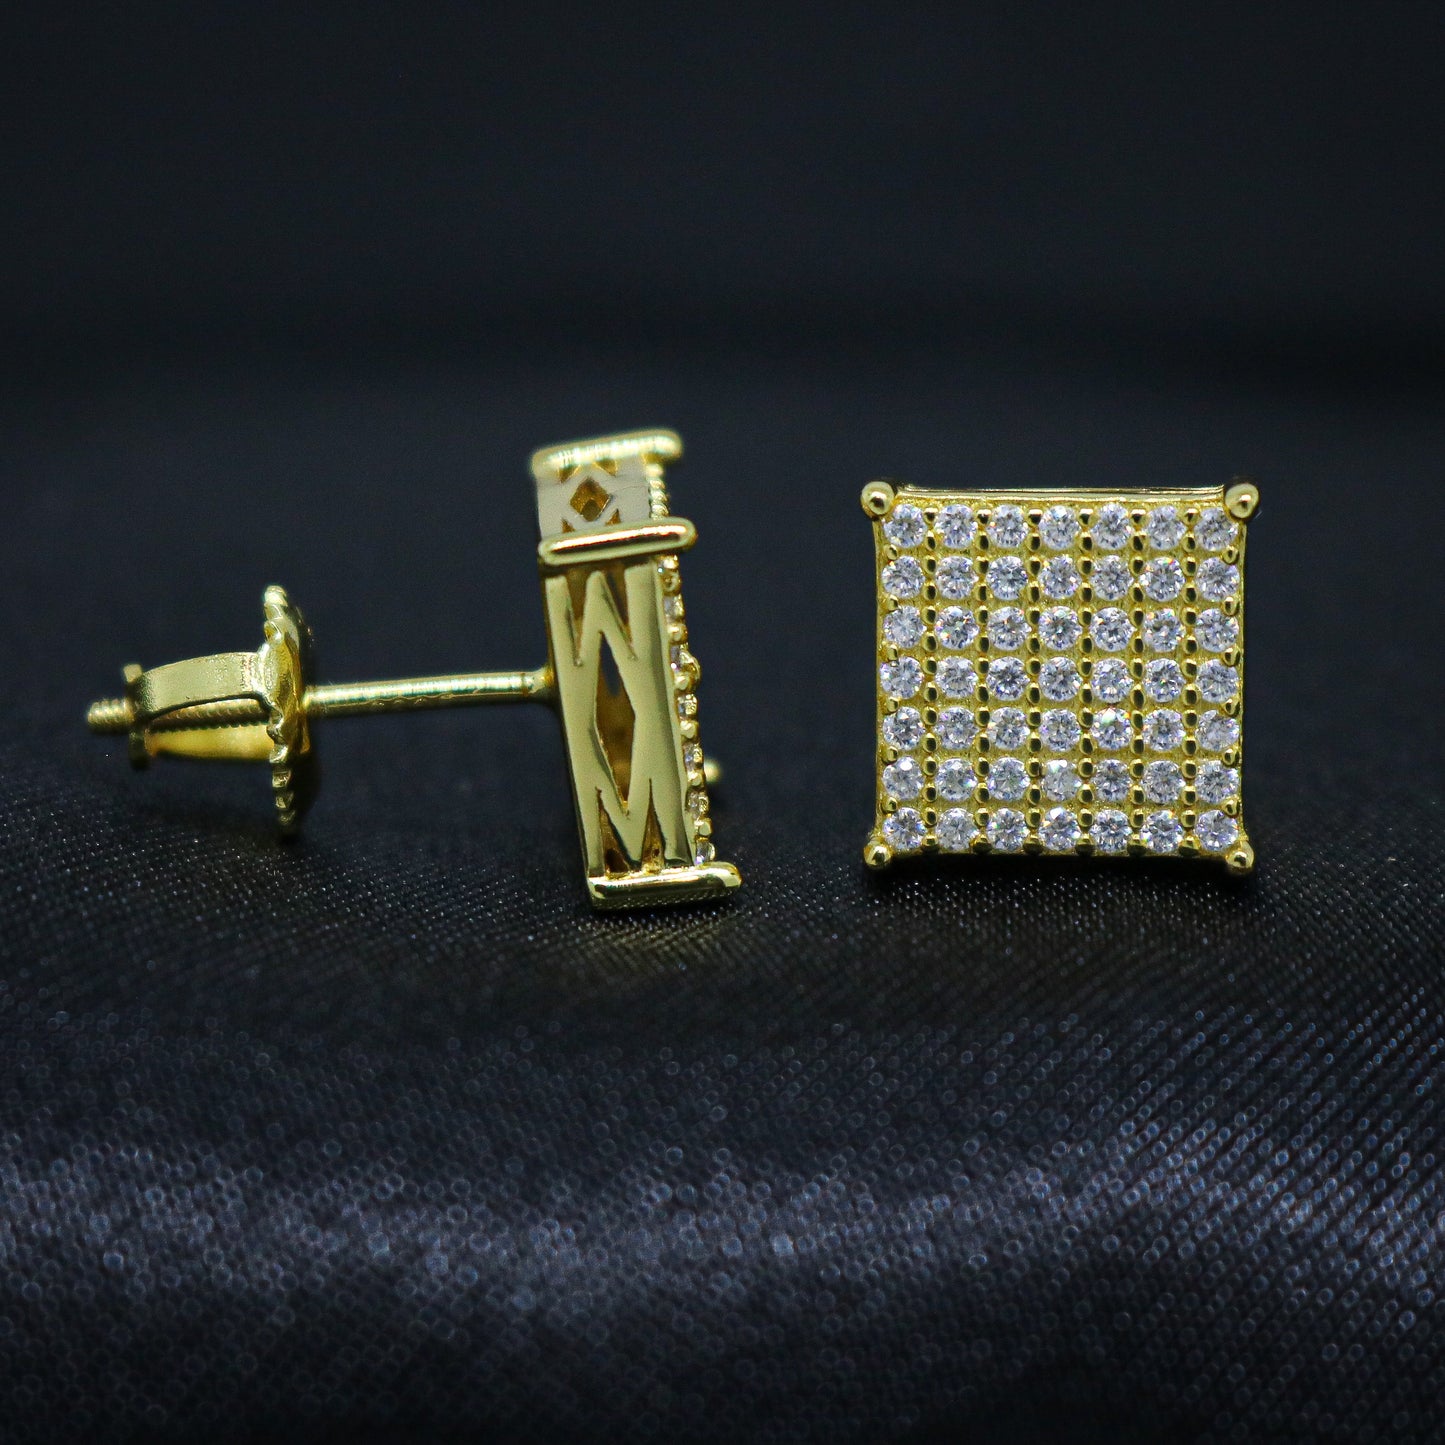 VVS Moissanite 9mm Iced Square Stud Earrings - Gold over 925 Silver